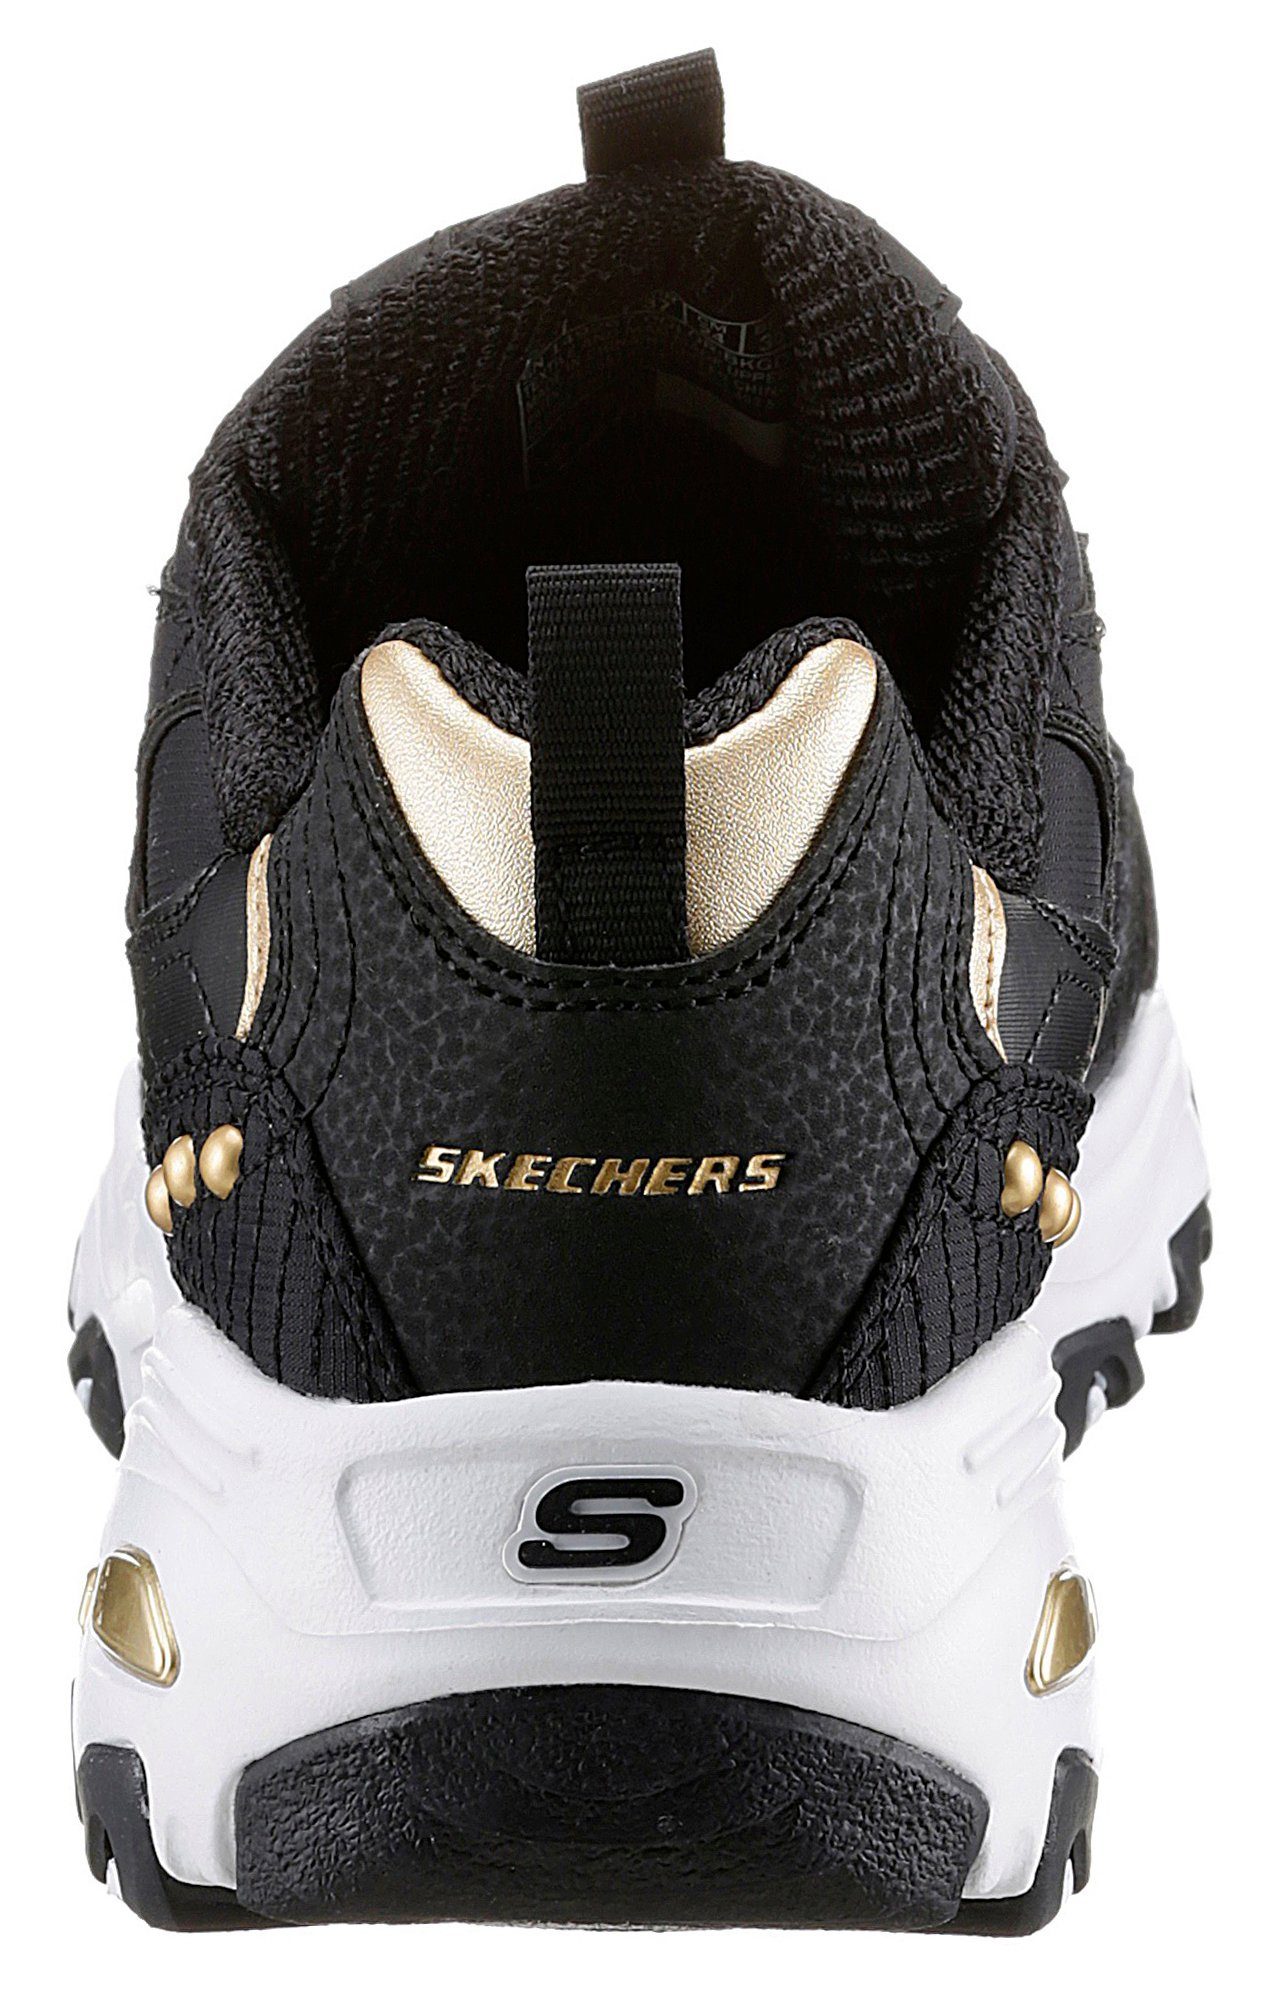 Skechers D'LITES mit Sneaker schönen Metallic-Details schwarz-goldfarben